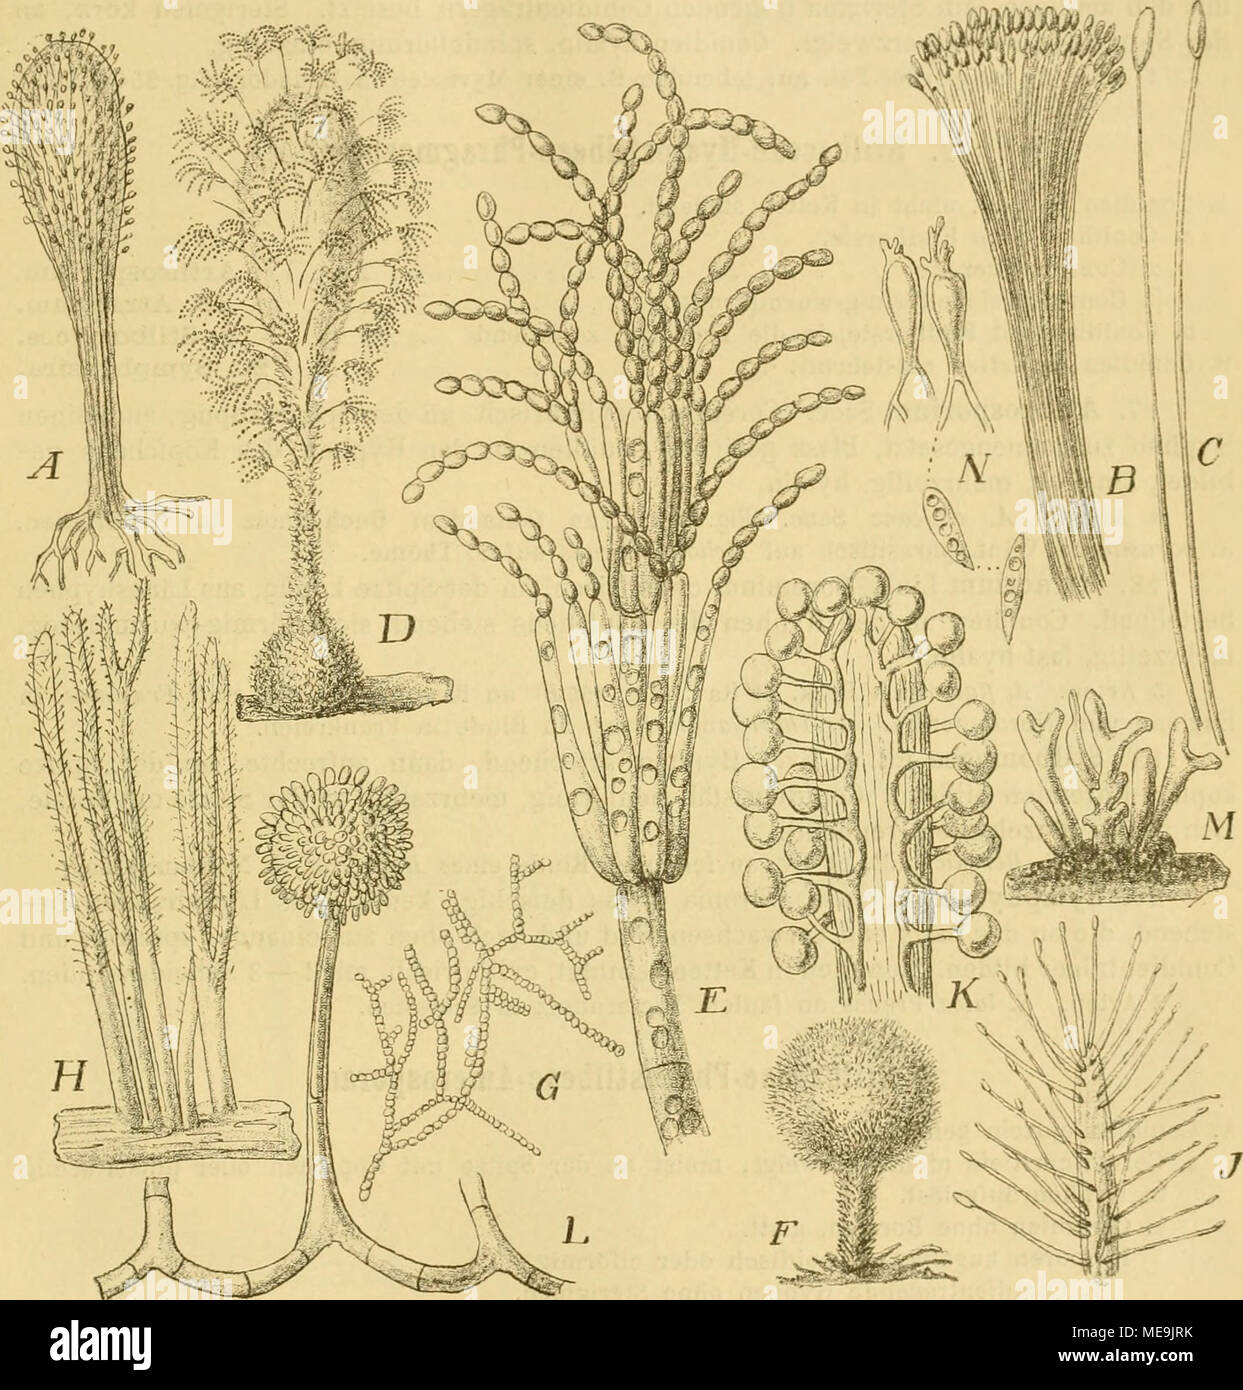 . Die NatÃ¼rlichen Pflanzenfamilien nebst ihren Gattungen und wichtigeren Arten, insbesondere den Nutzpflanzen, unter Mitwirkung zahlreicher hervorragender Fachgelehrten begrÃ¼ndet . Fig. 254. A Stilbella (rythioc(phala (Ditm.) Lmda,-a. Haliitus des Coremiums, schwach vergr. â BâC C'iliciopodium sanguineum (Corda) Sacc. li Coremium, vergr. C Conidientragende Hyphen, stark vergr. â DâE Coremium glau- cnm Fries. iJ Coremium, vergr. Â£ ConidientrÃ¤gPr, stark vergr. â FâG Lasioderma flavoiirins Dur. et Mont. i-&quot; Habitus des Pilzes, (iO/1. G Sporenketten, :!(J0/1. â HâJ Isaria brachiata (Batsc Stock Photo